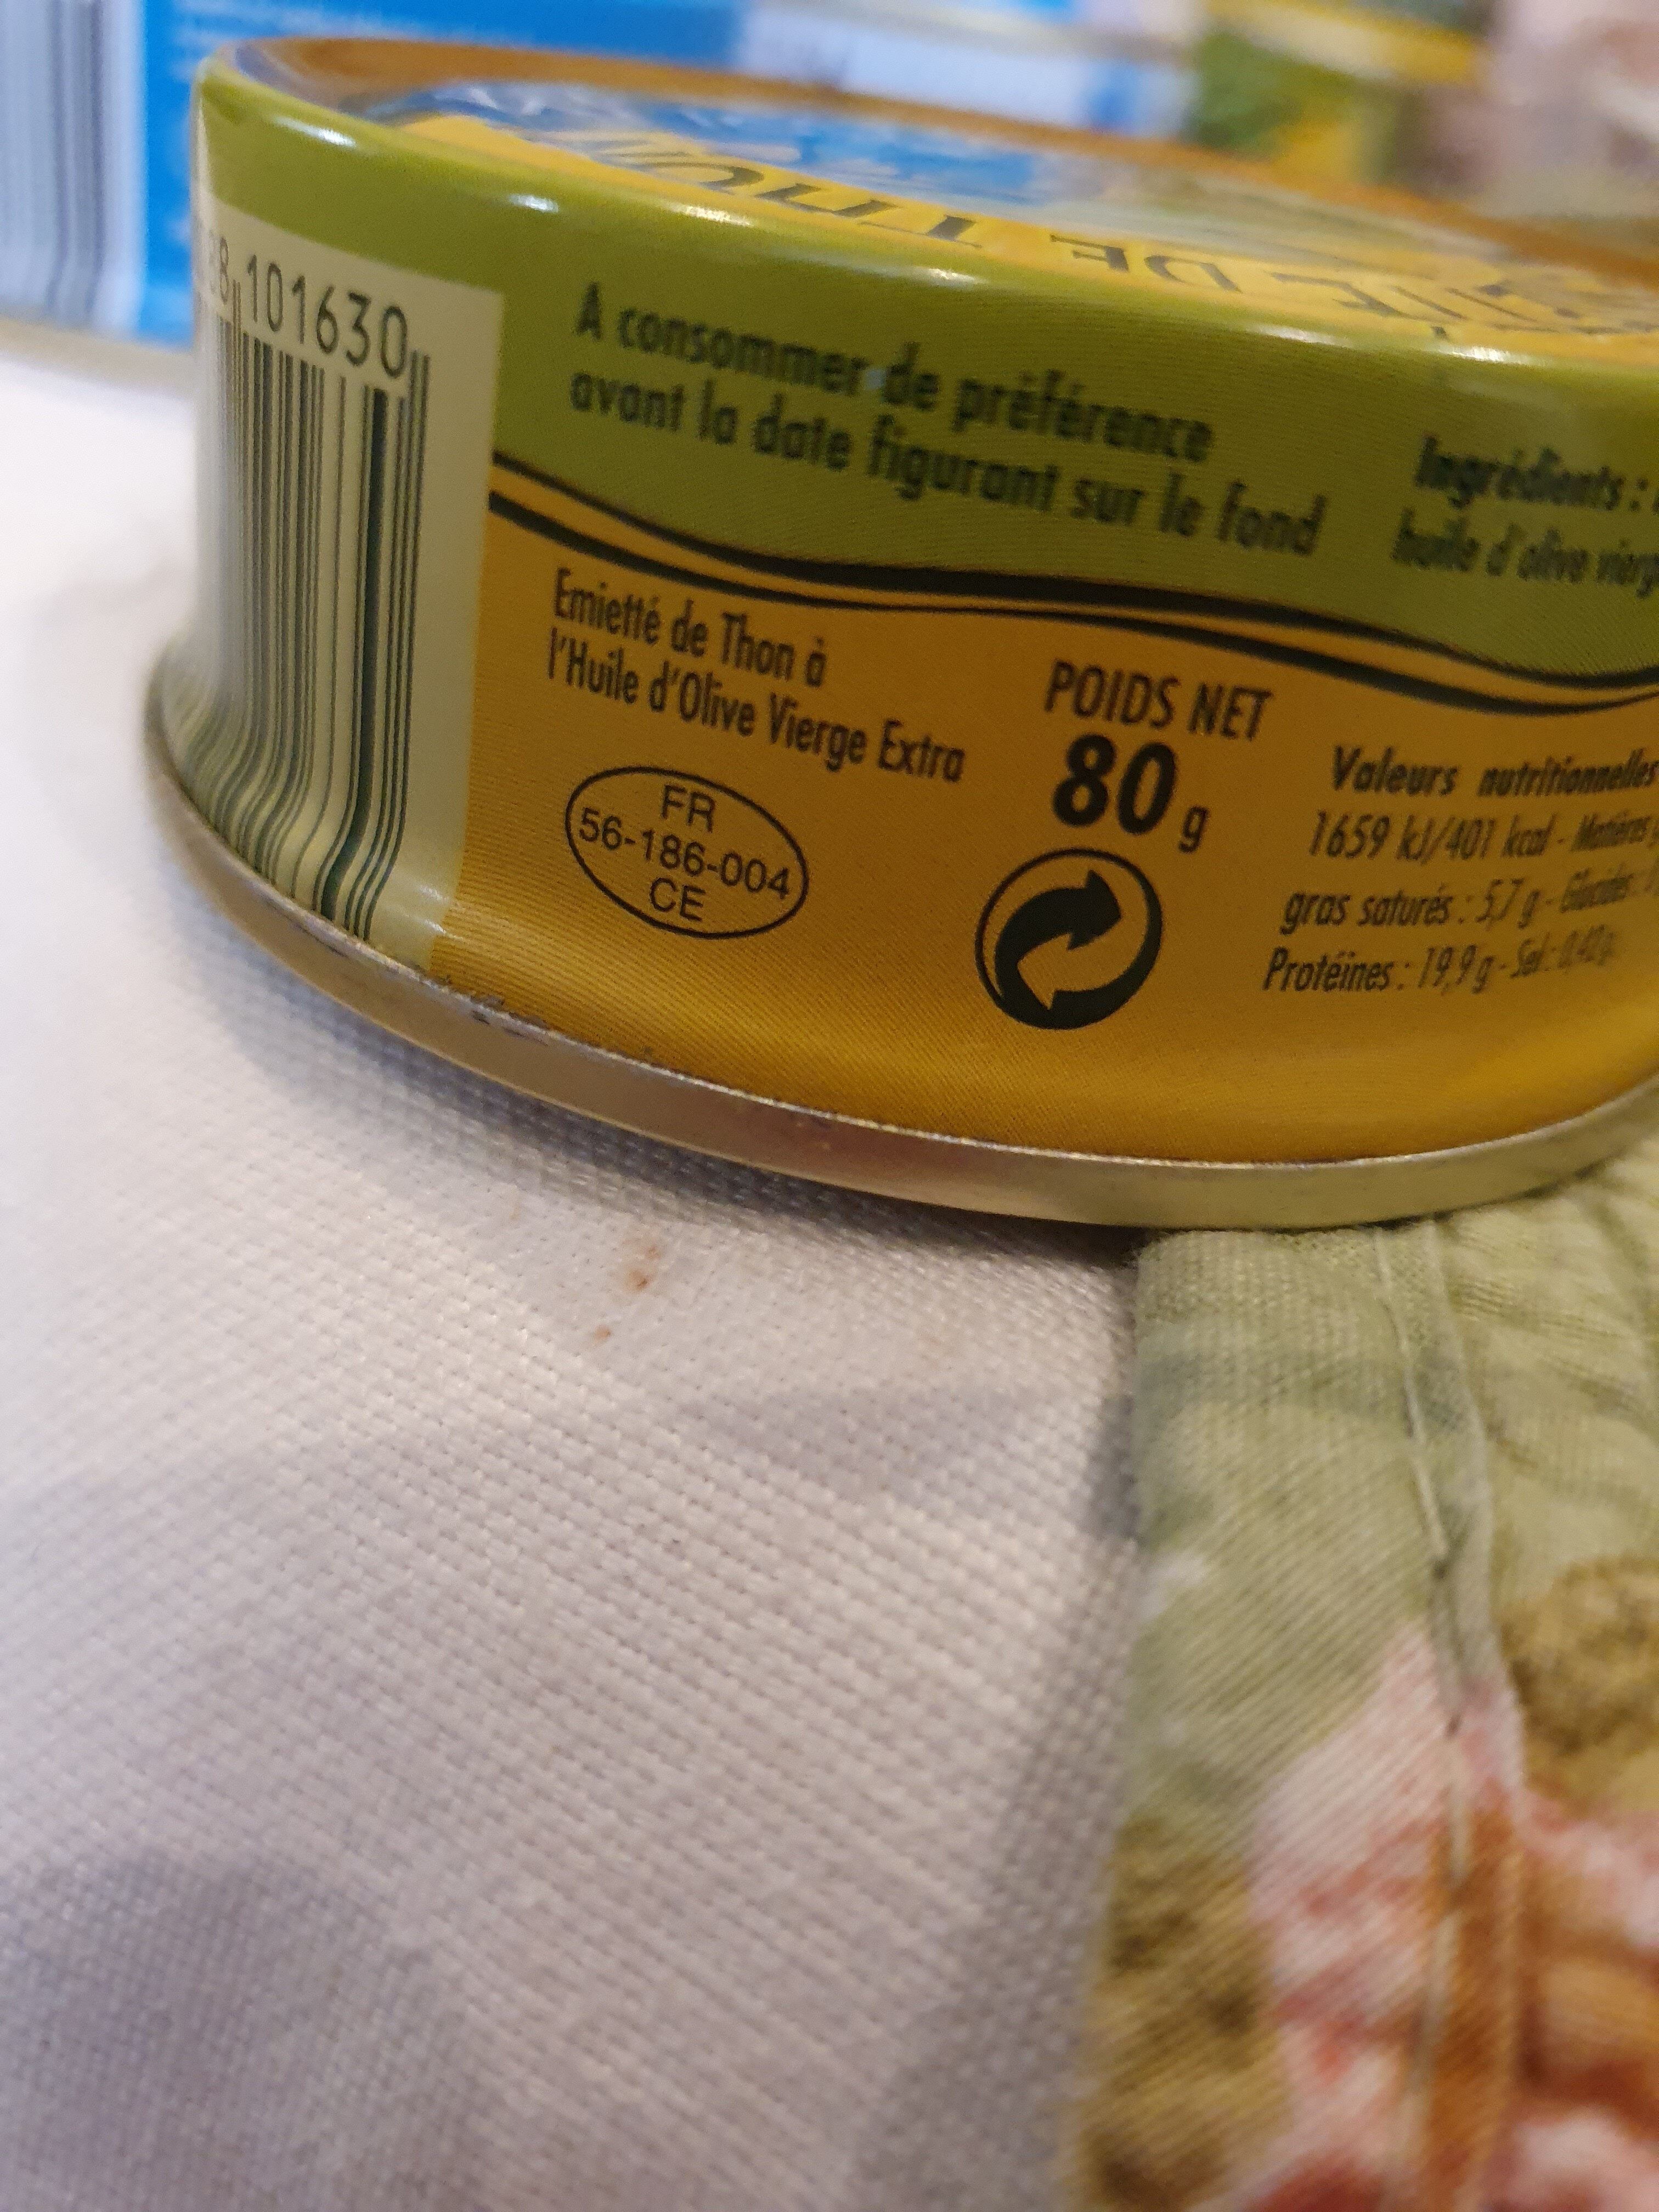 émietté de thon a l'huile d'olive vierge extra - Instruction de recyclage et/ou informations d'emballage